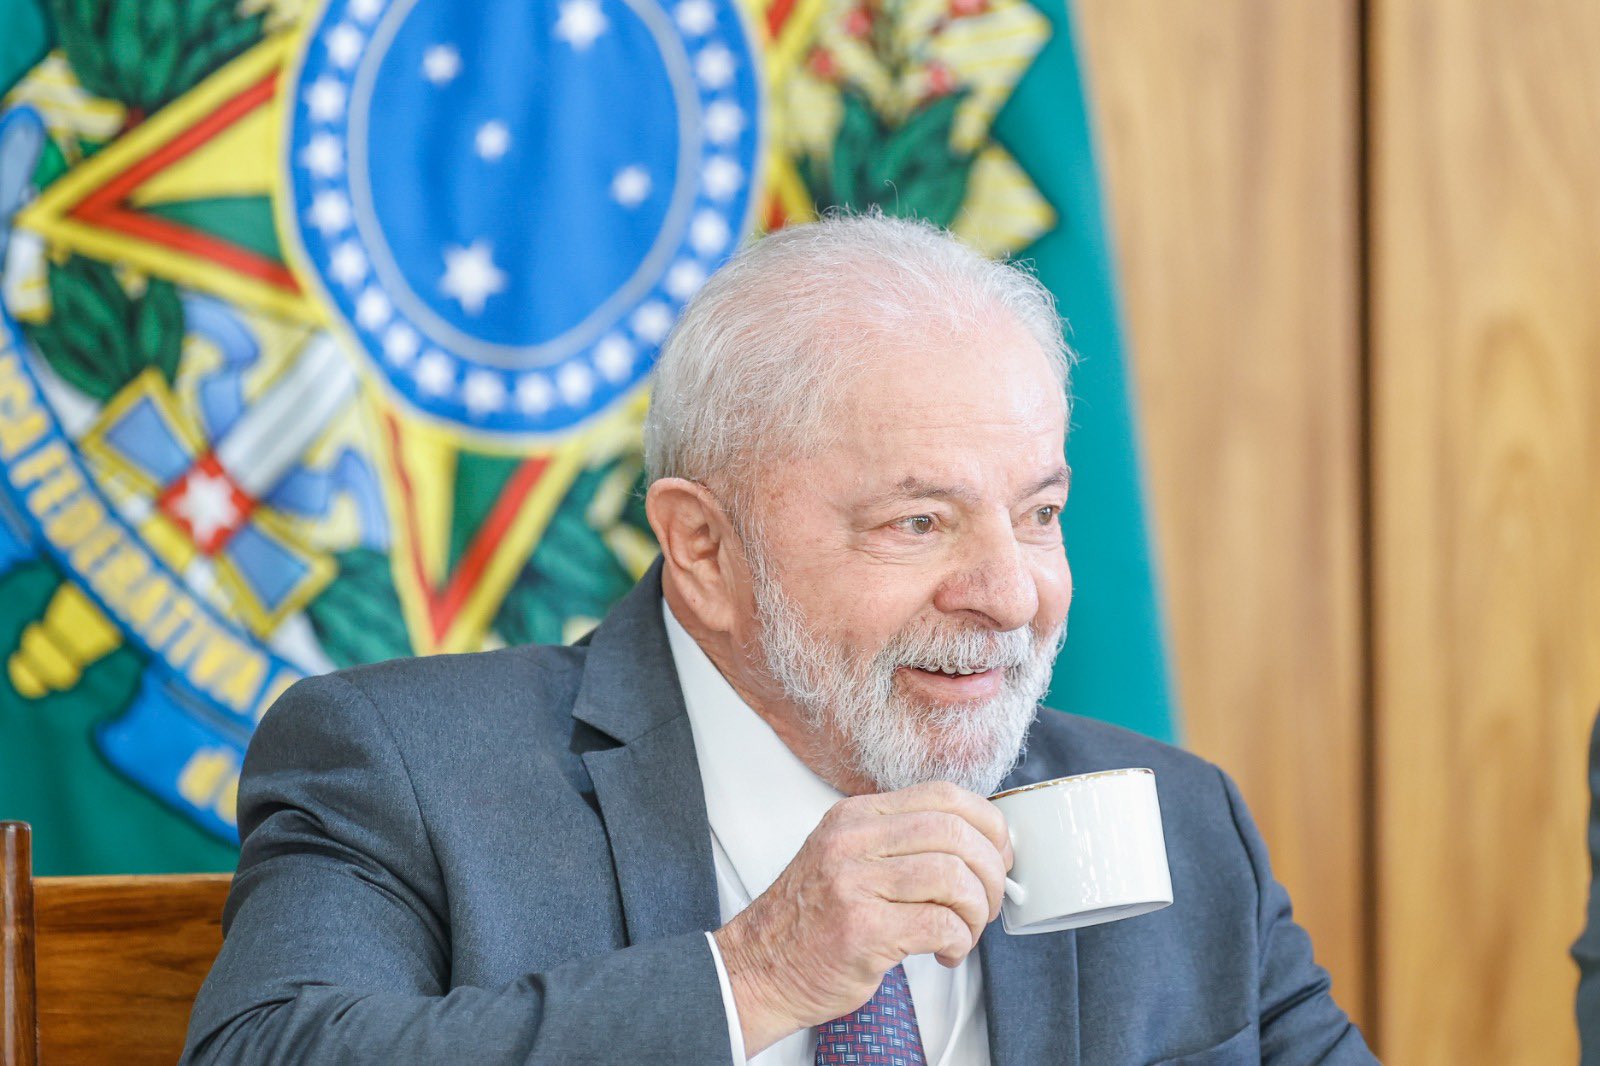 Segundo Lula, os congressistas podem "pensar diferente" do governo - Foto: Ricardo Stuckert/PR